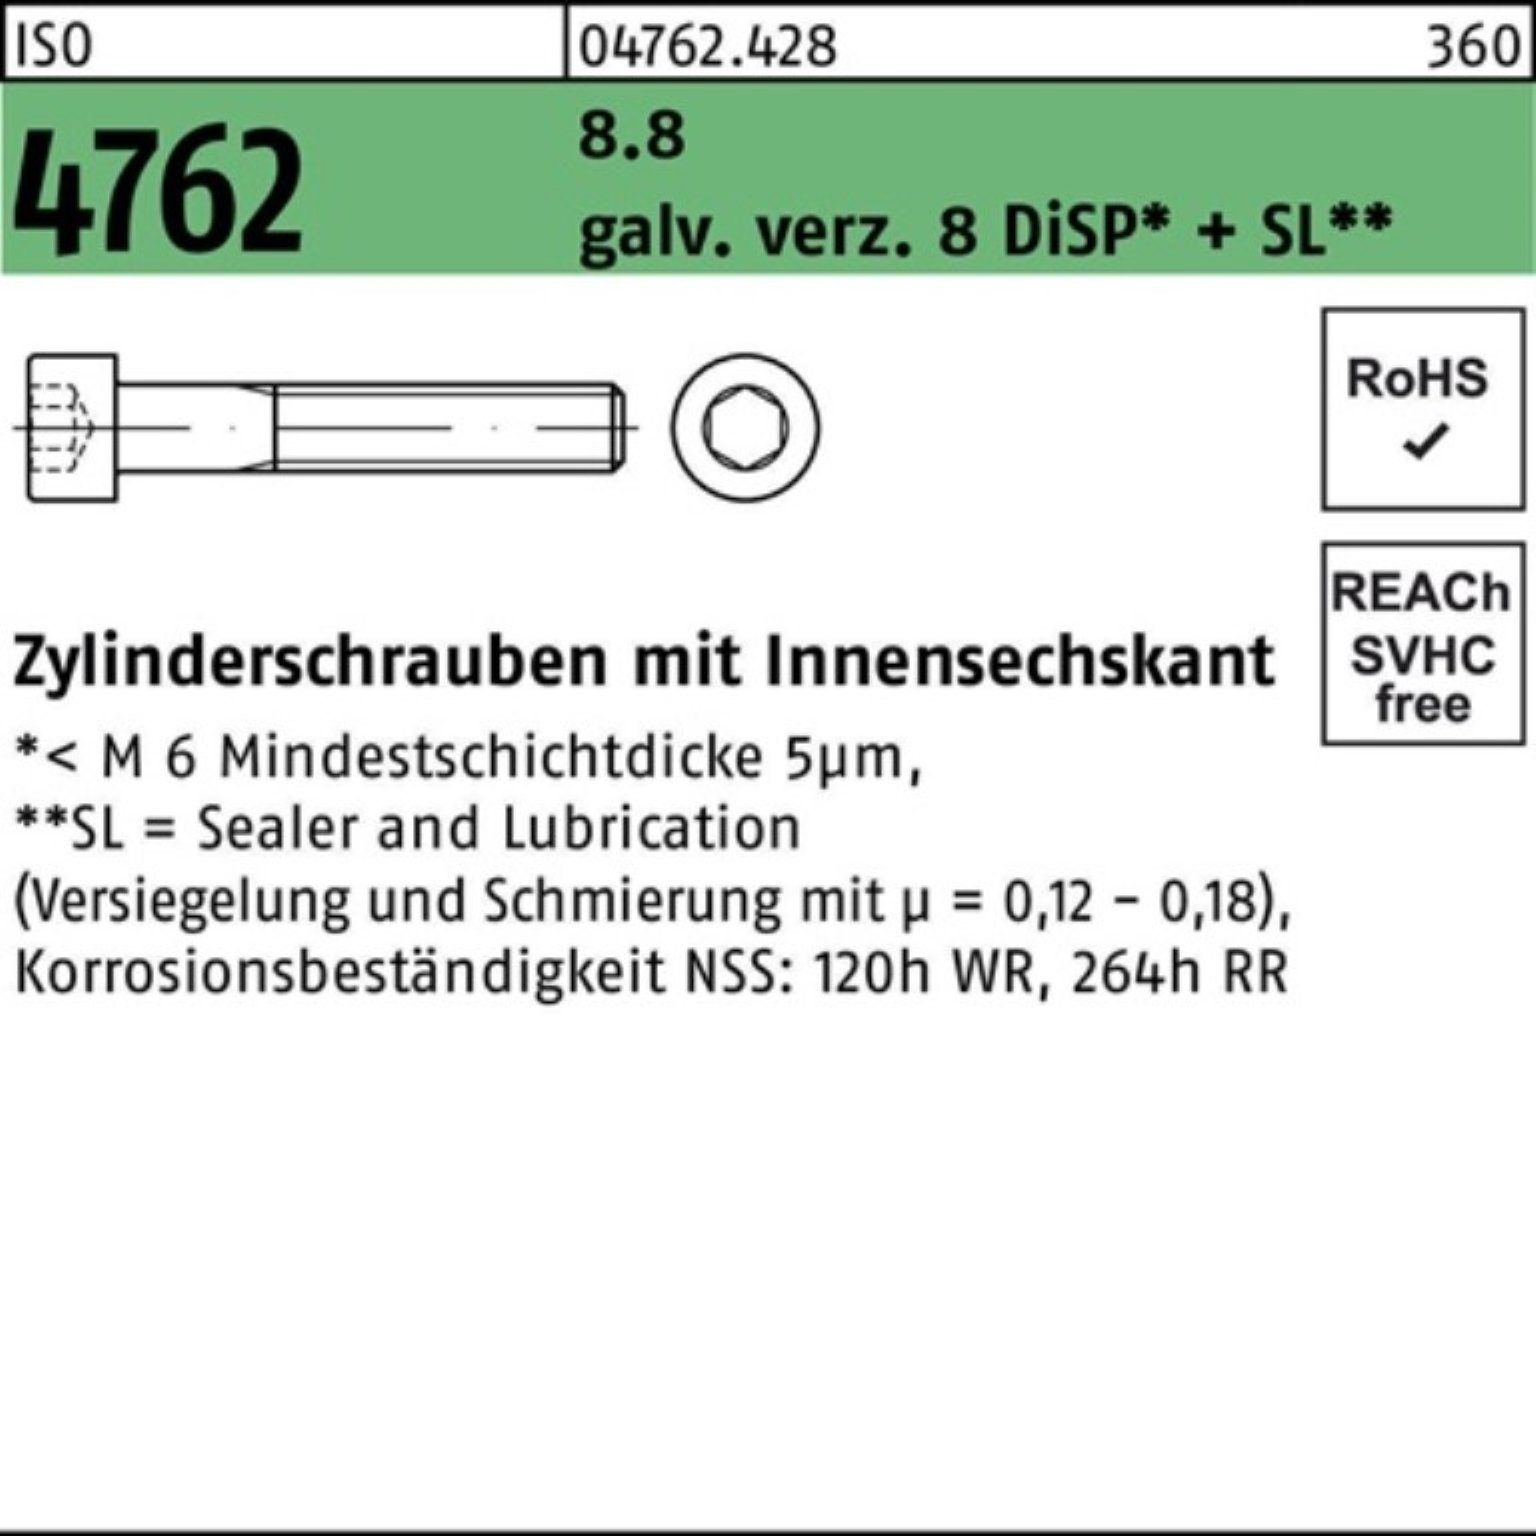 Zylinderschraube Reyher galv.verz. 8.8 100er 4762 Innen-6kt Pack M10x40 8 ISO Zylinderschraube